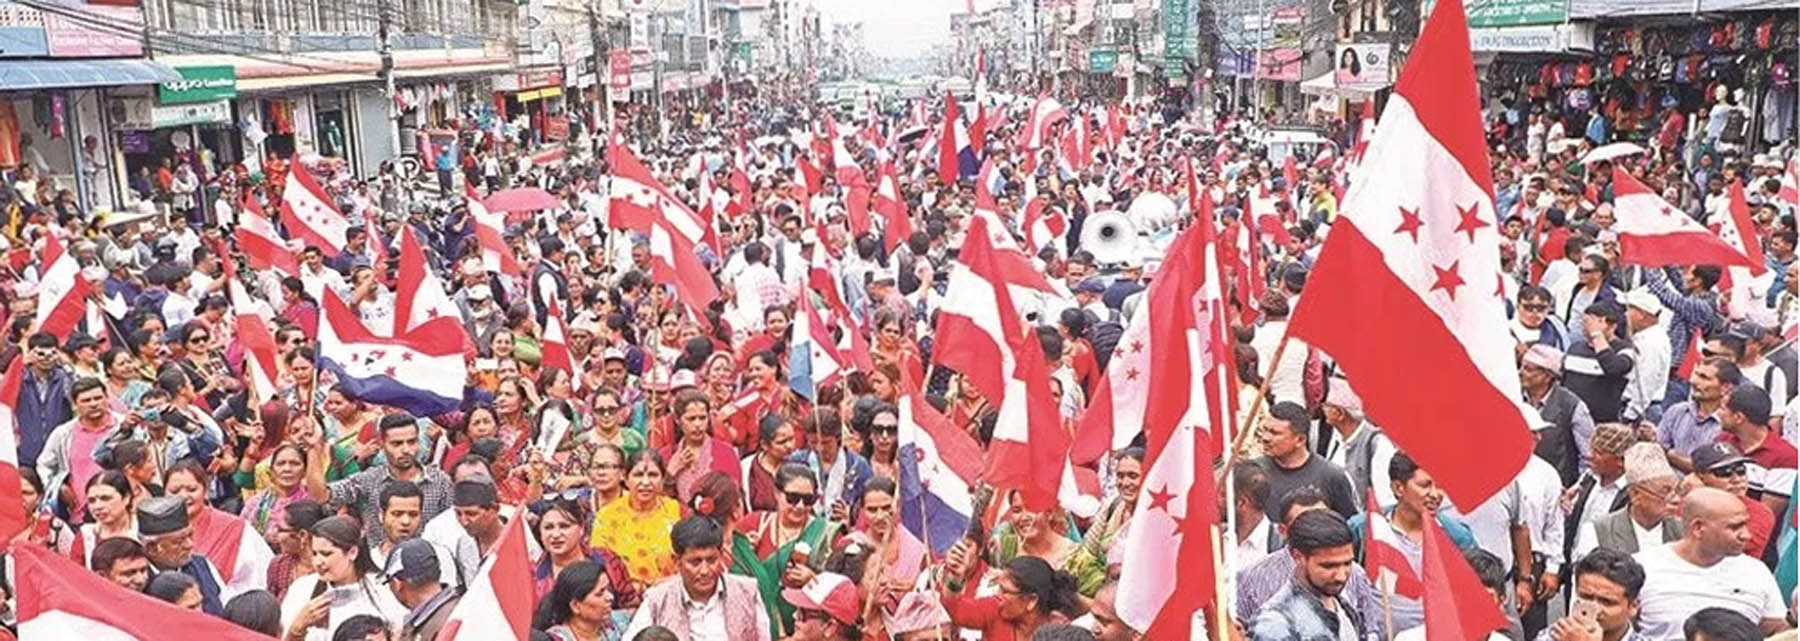 संसद विघटनविरुद्ध कांग्रेसले आज ७७ वटै जिल्लामा विरोध प्रदर्शन गर्दै